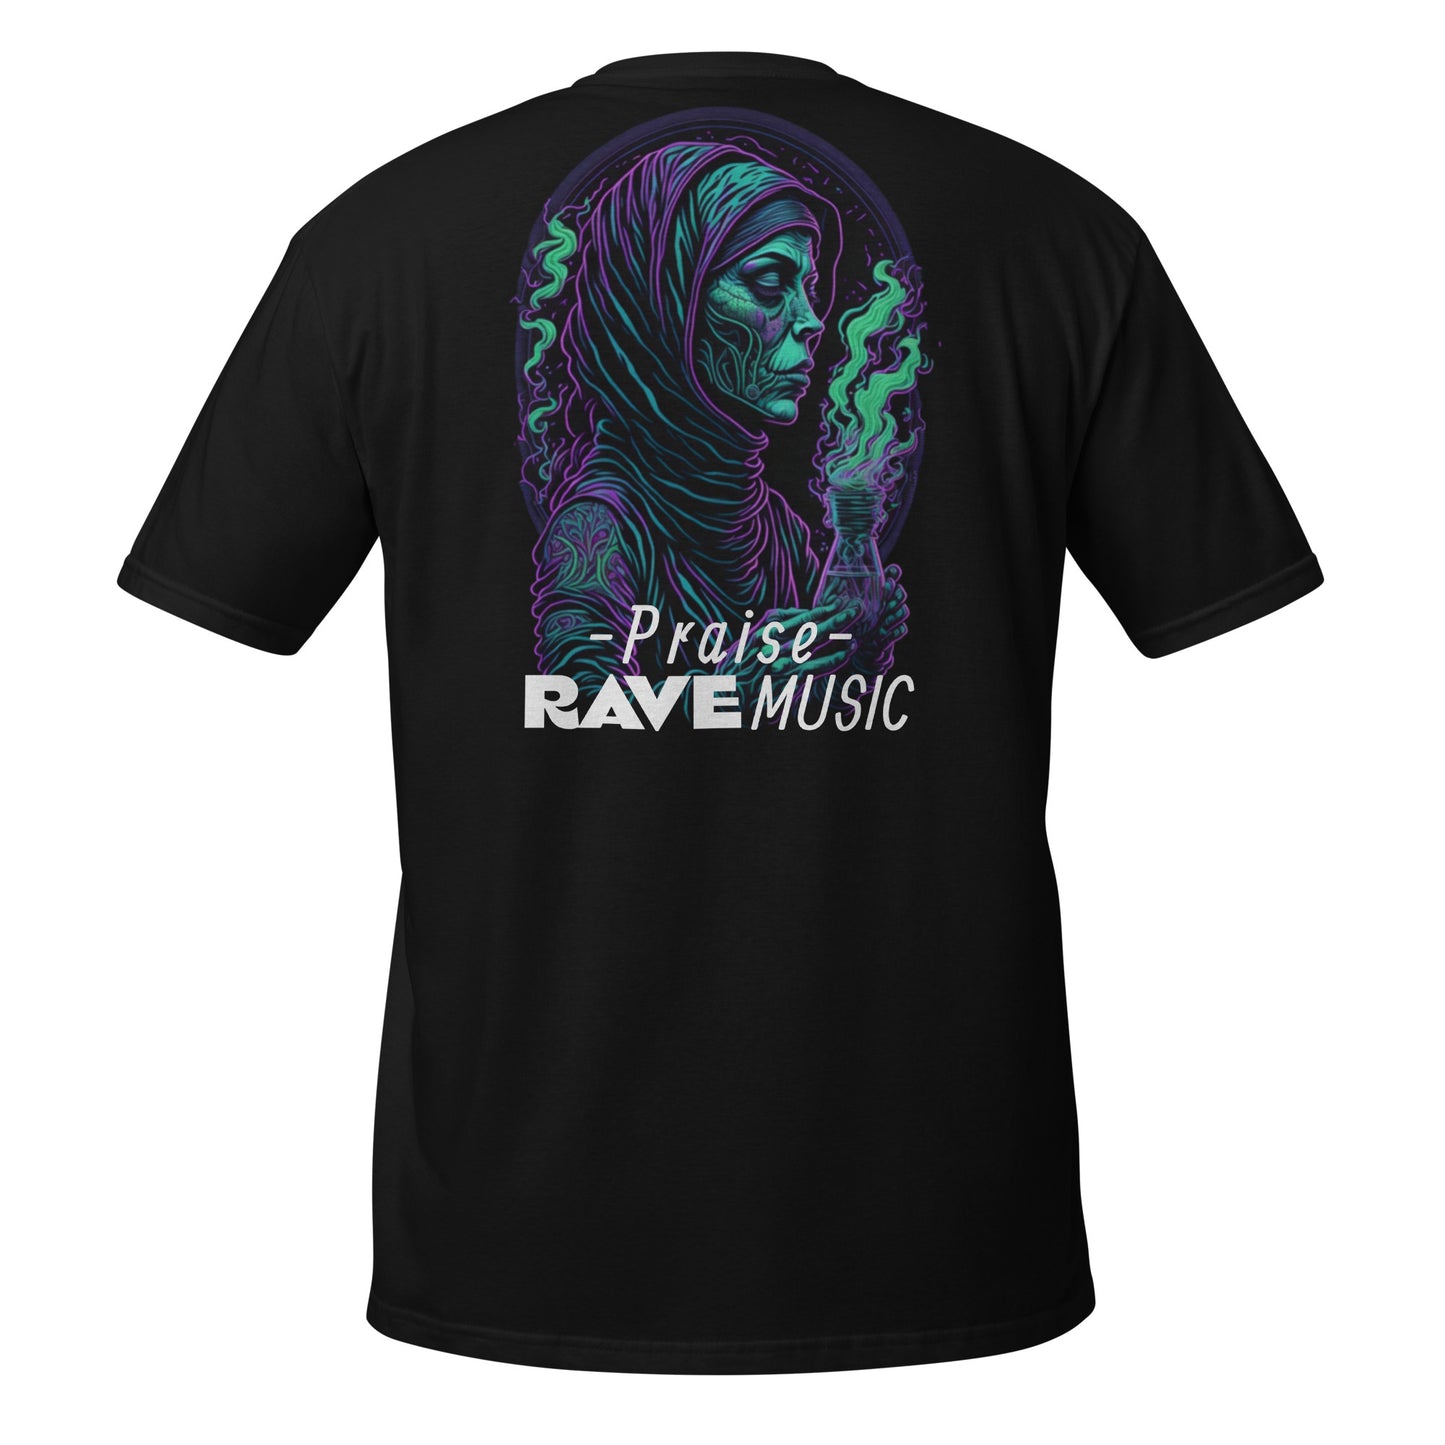 Praise Rave Music - Camiseta unisex